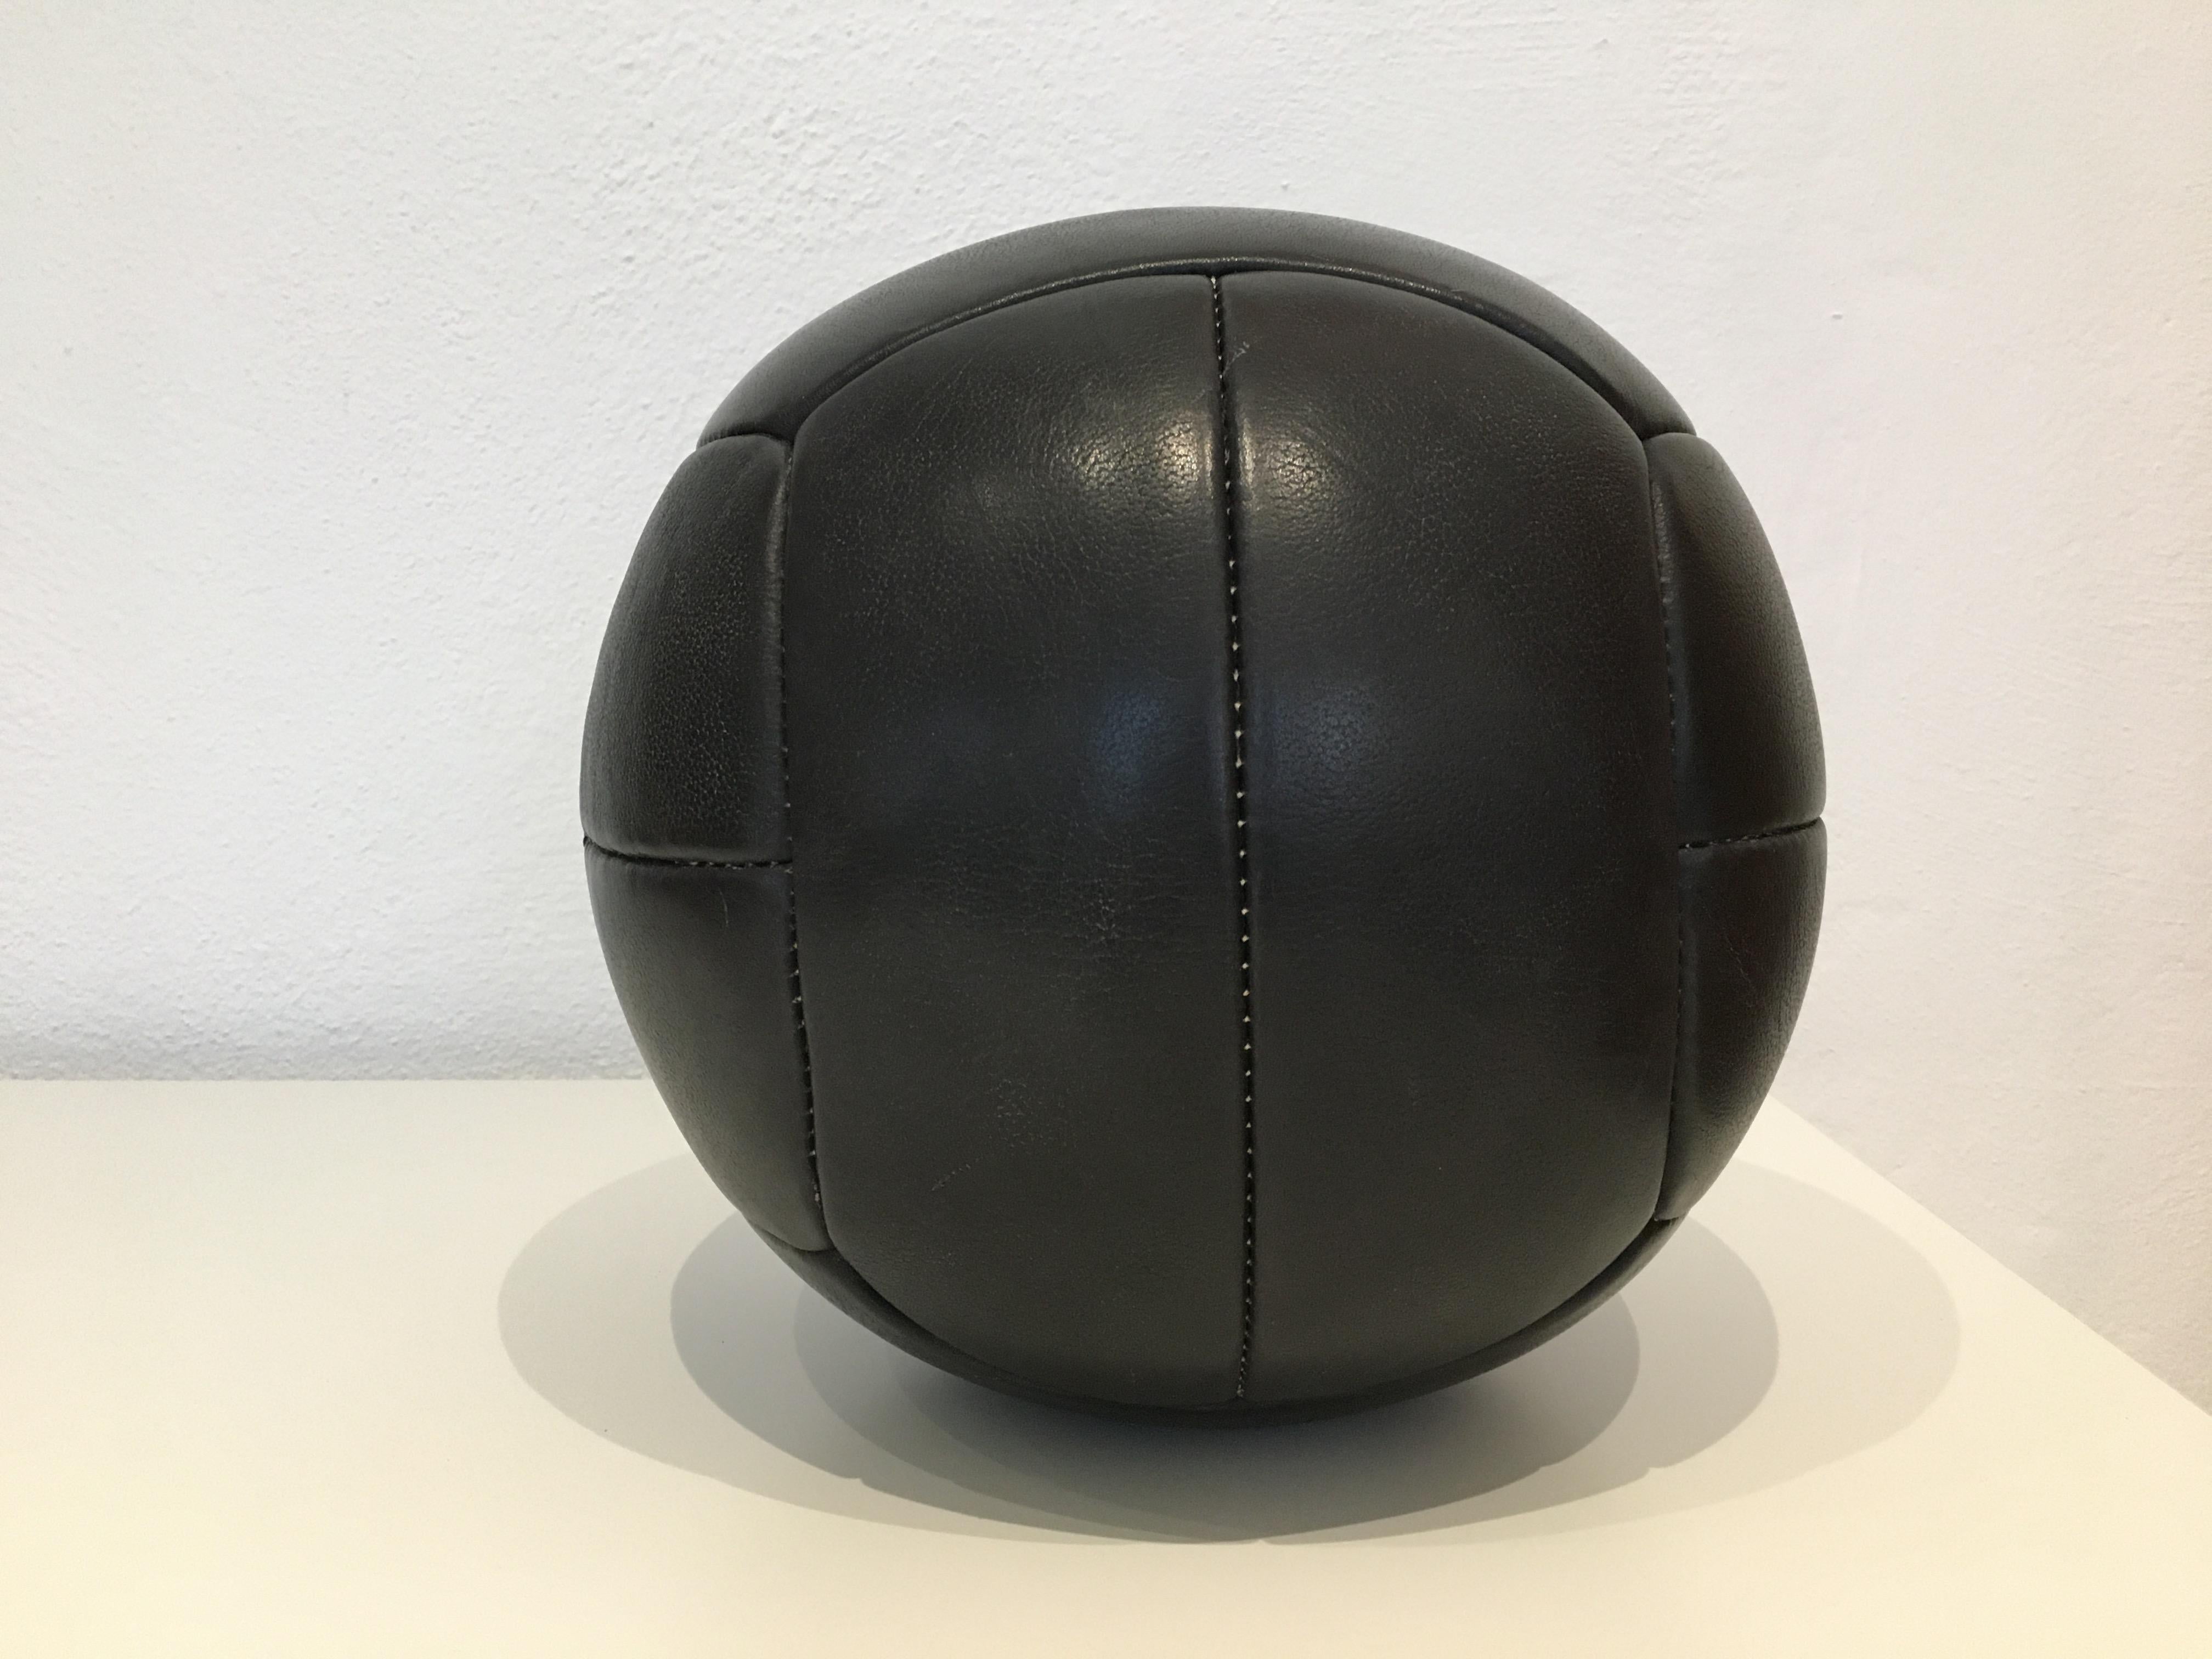 Mid-Century Modern Vintage Black Leather Medicine Ball, 3kg, 1930s For Sale